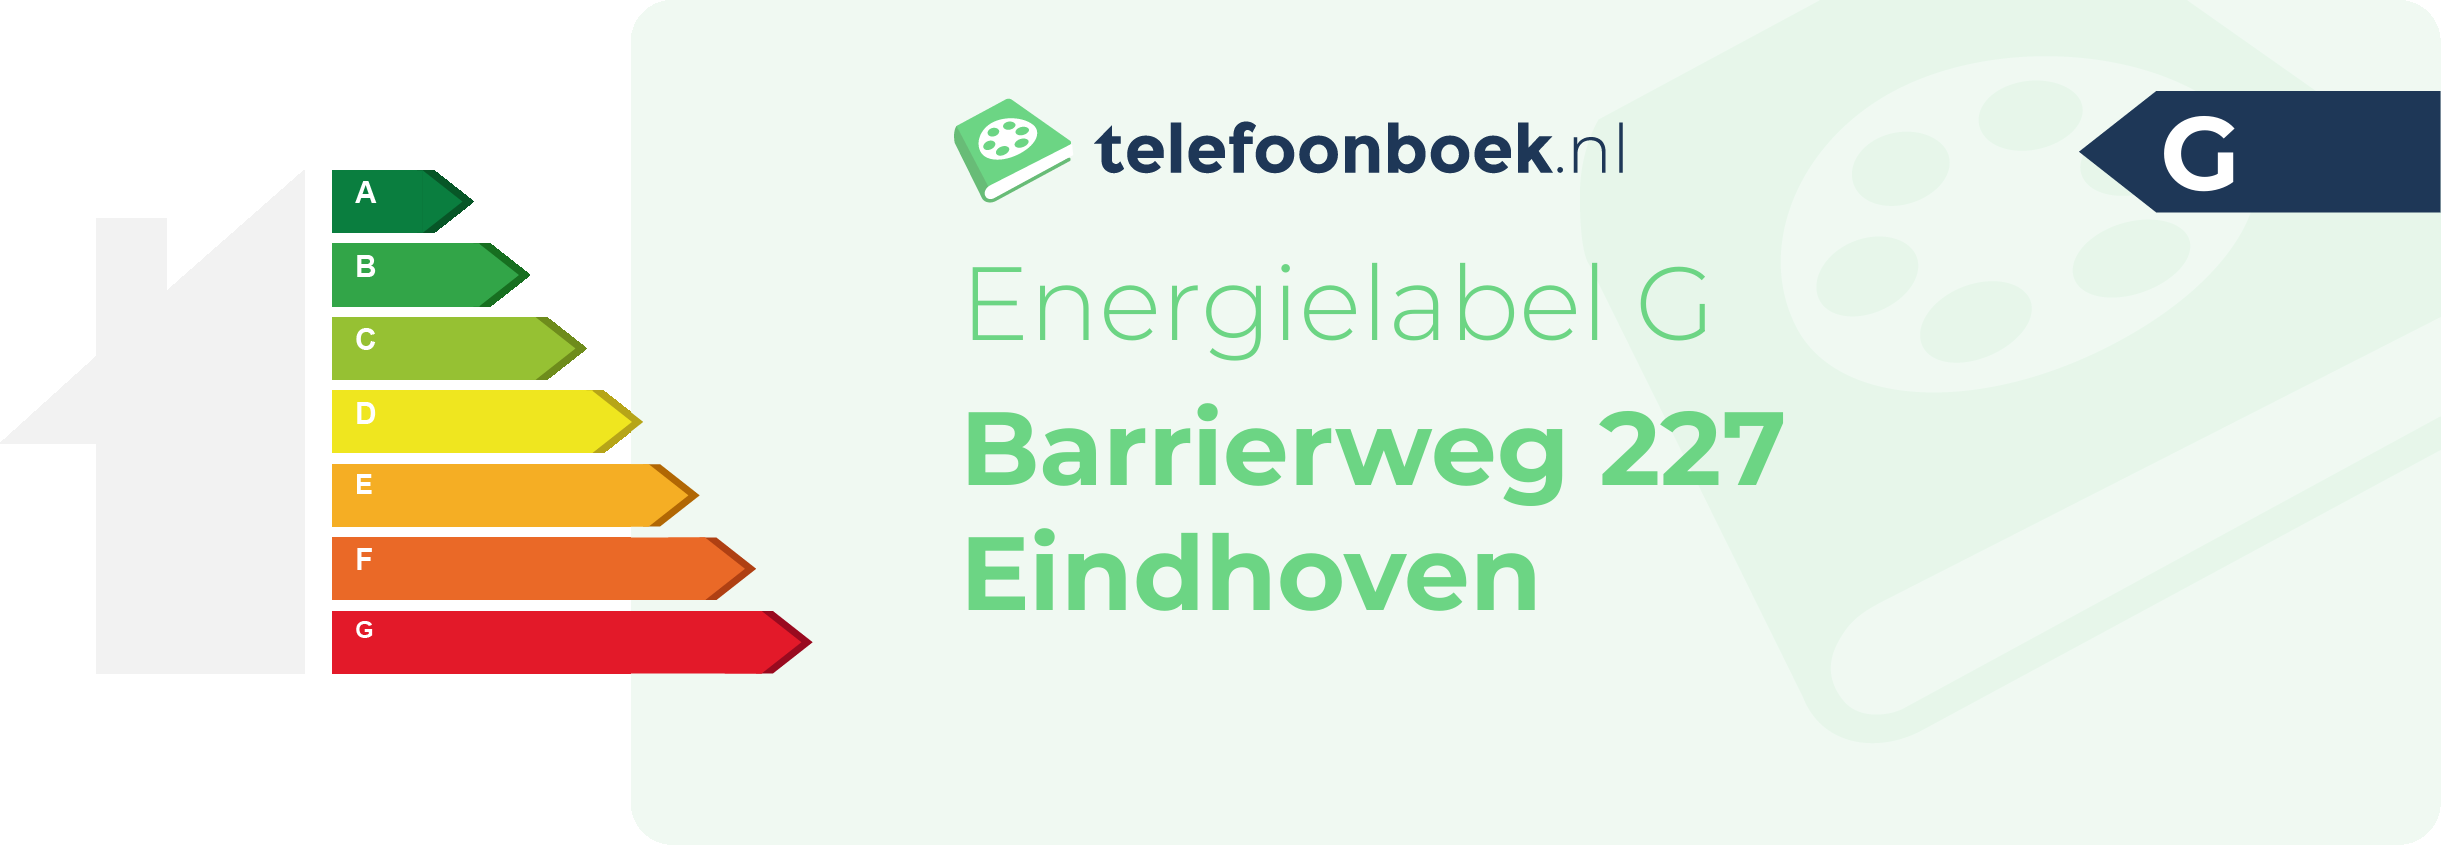 Energielabel Barrierweg 227 Eindhoven